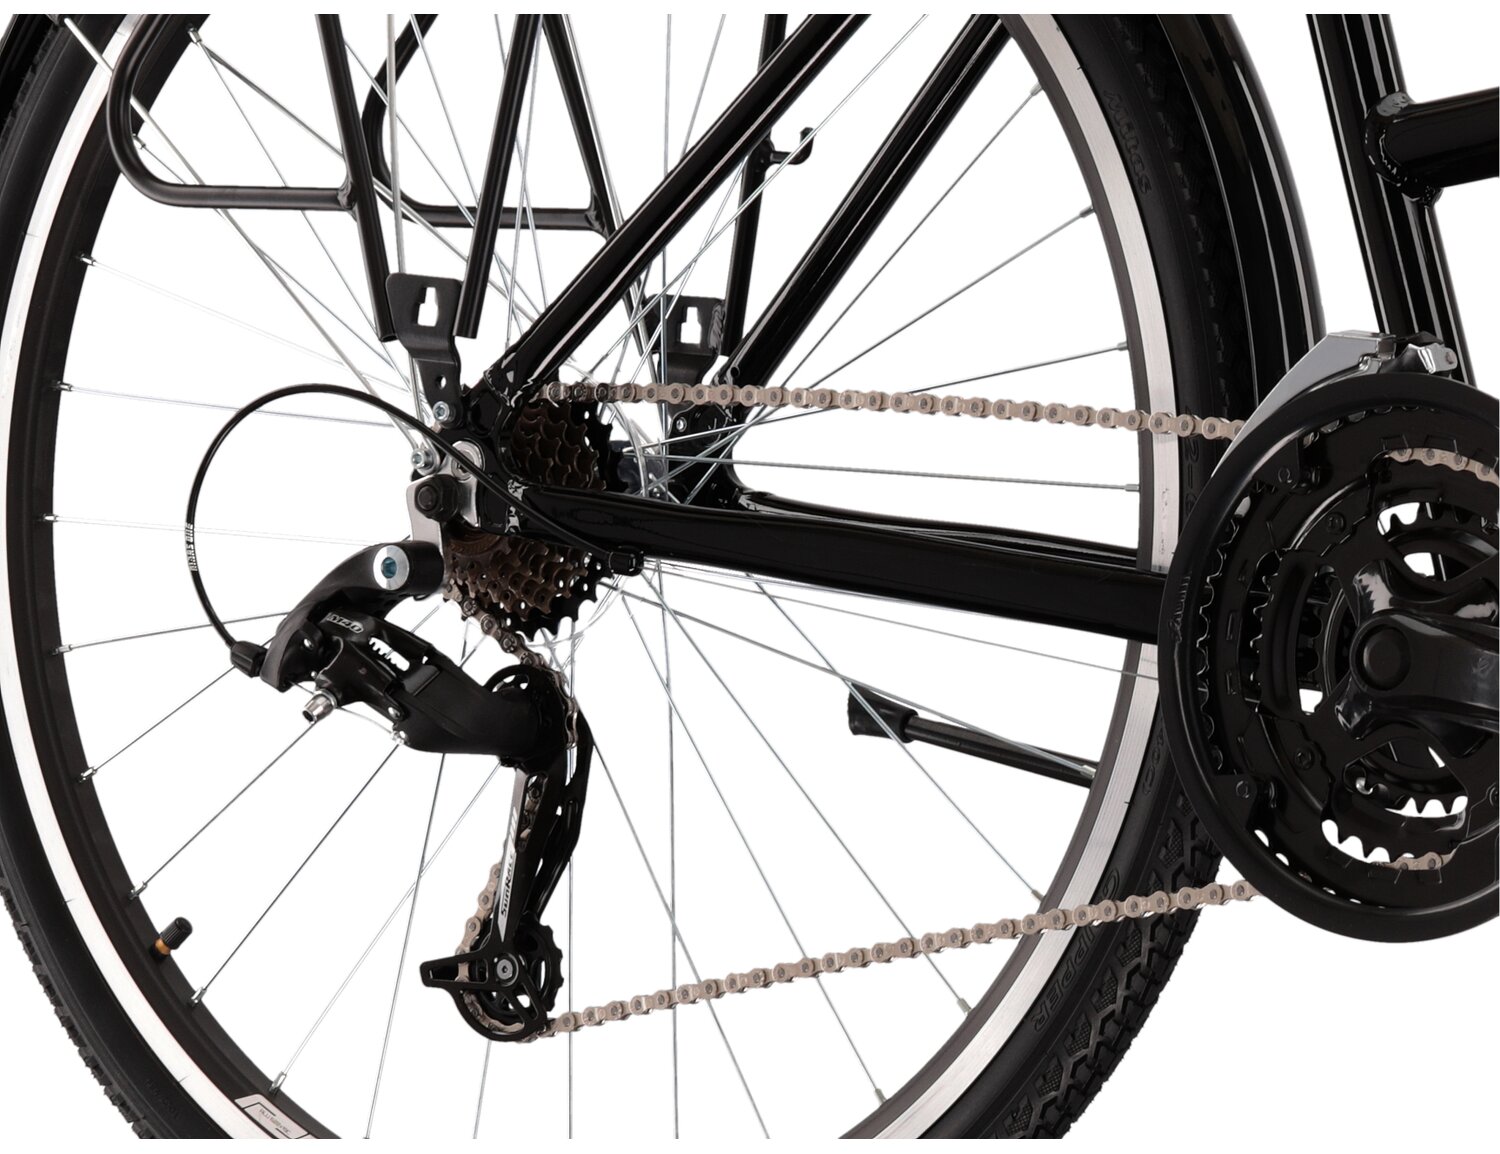  Tylna siedmiobiegowa przerzutka Sunrace RDM41 oraz hamulce v-brake w rowerze trekkingowym damskim KROSS Trans 1.0 SR 